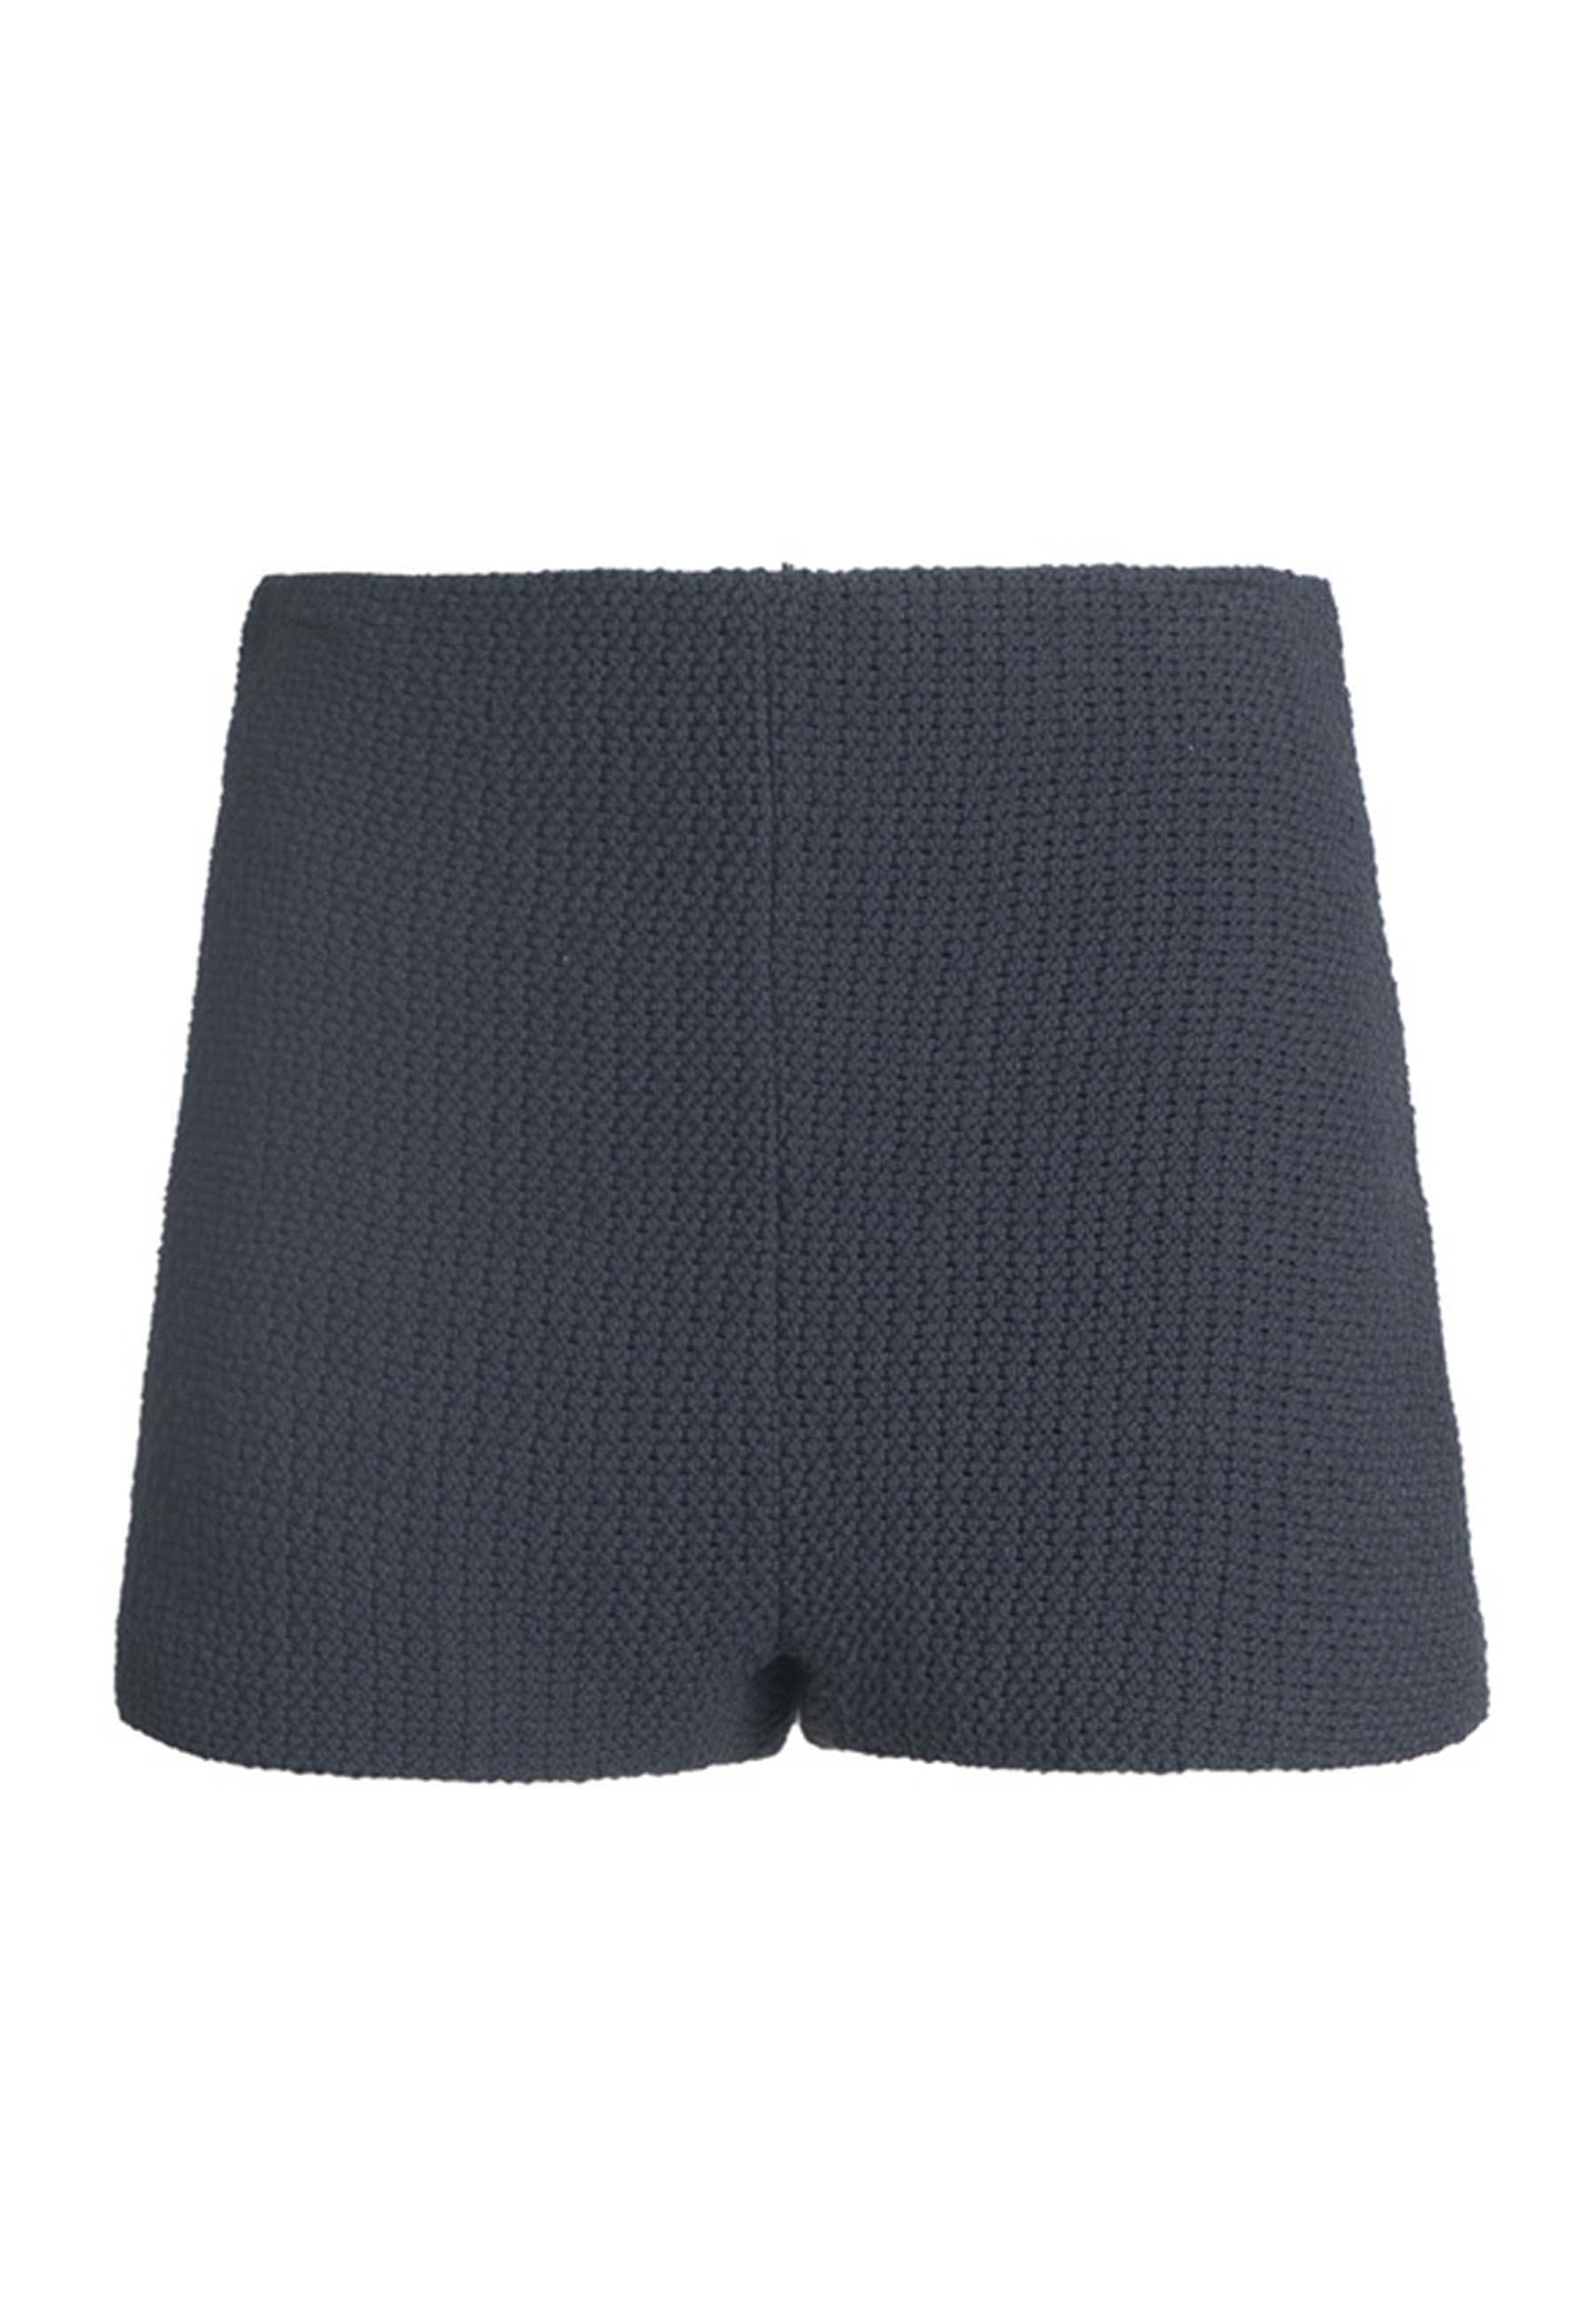 Shorts donna a culotte in tessuto elasticizzato grigio